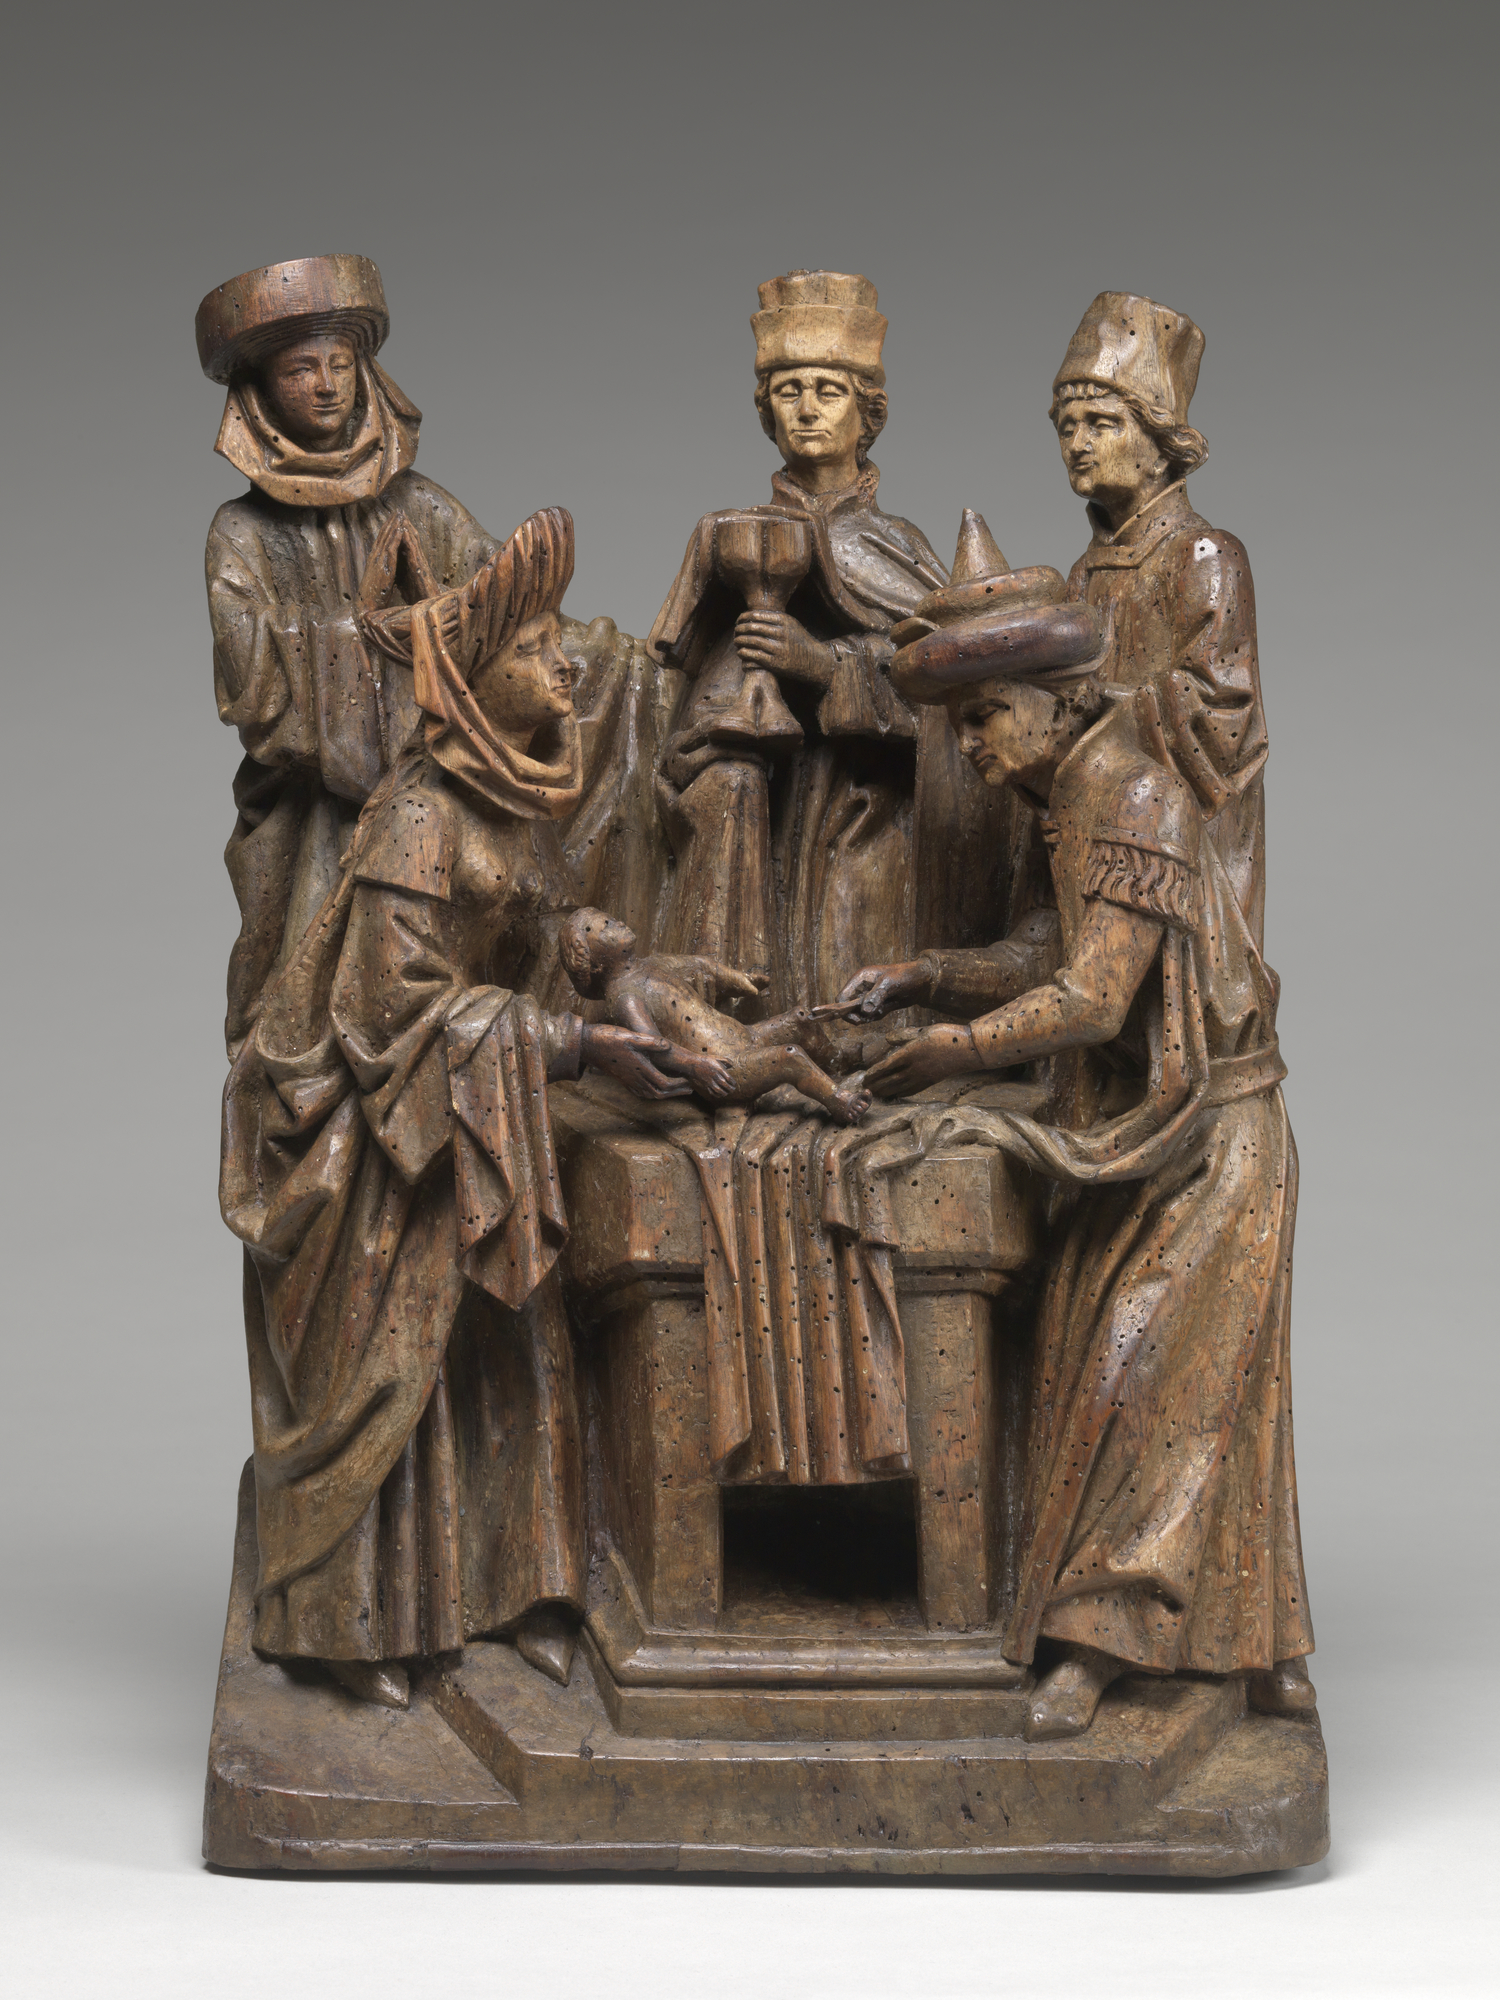 Wooden sculpture representing a crowd of men observing a circumcision. 